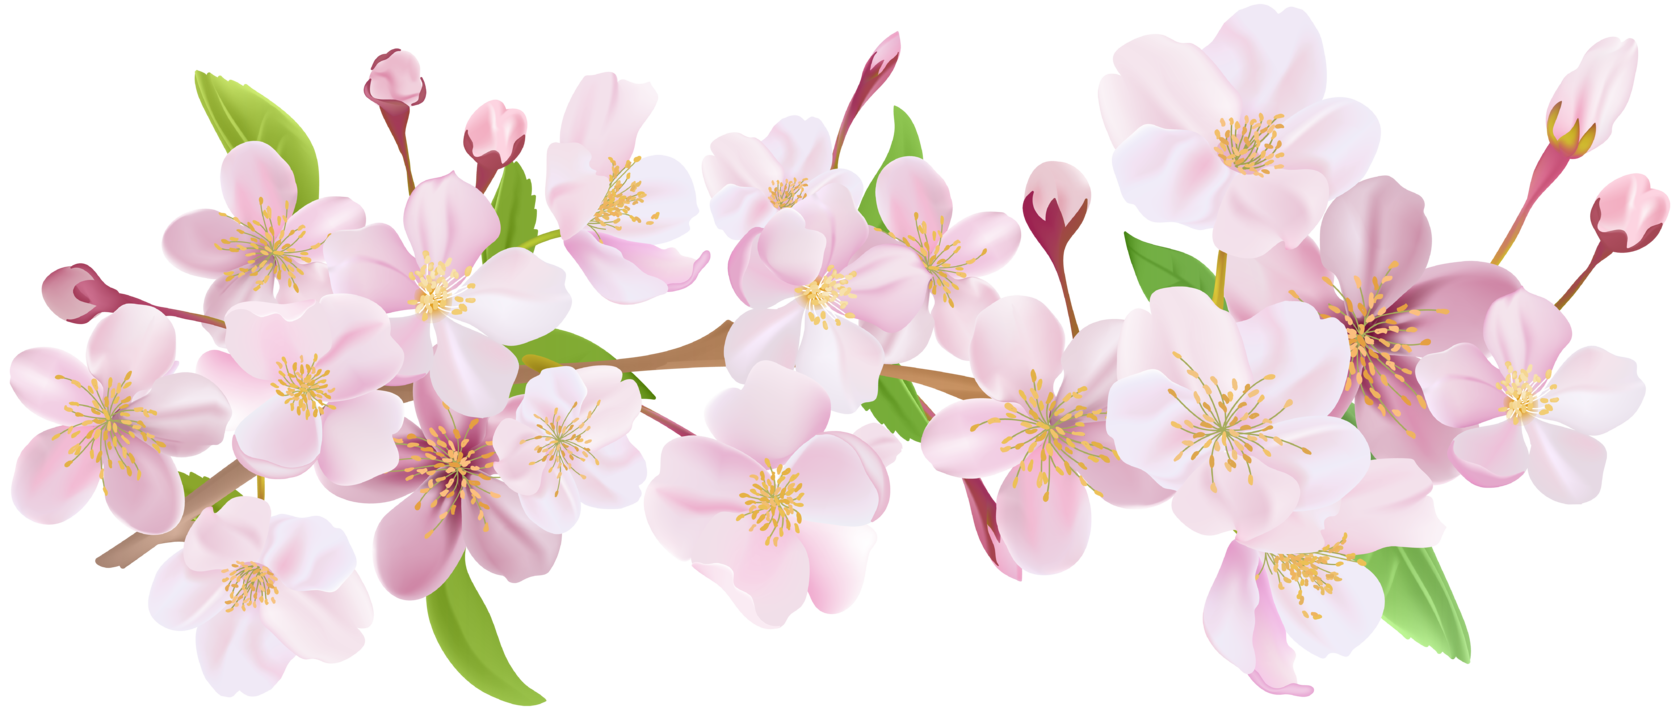 Картинка цветок яблони на прозрачном фоне